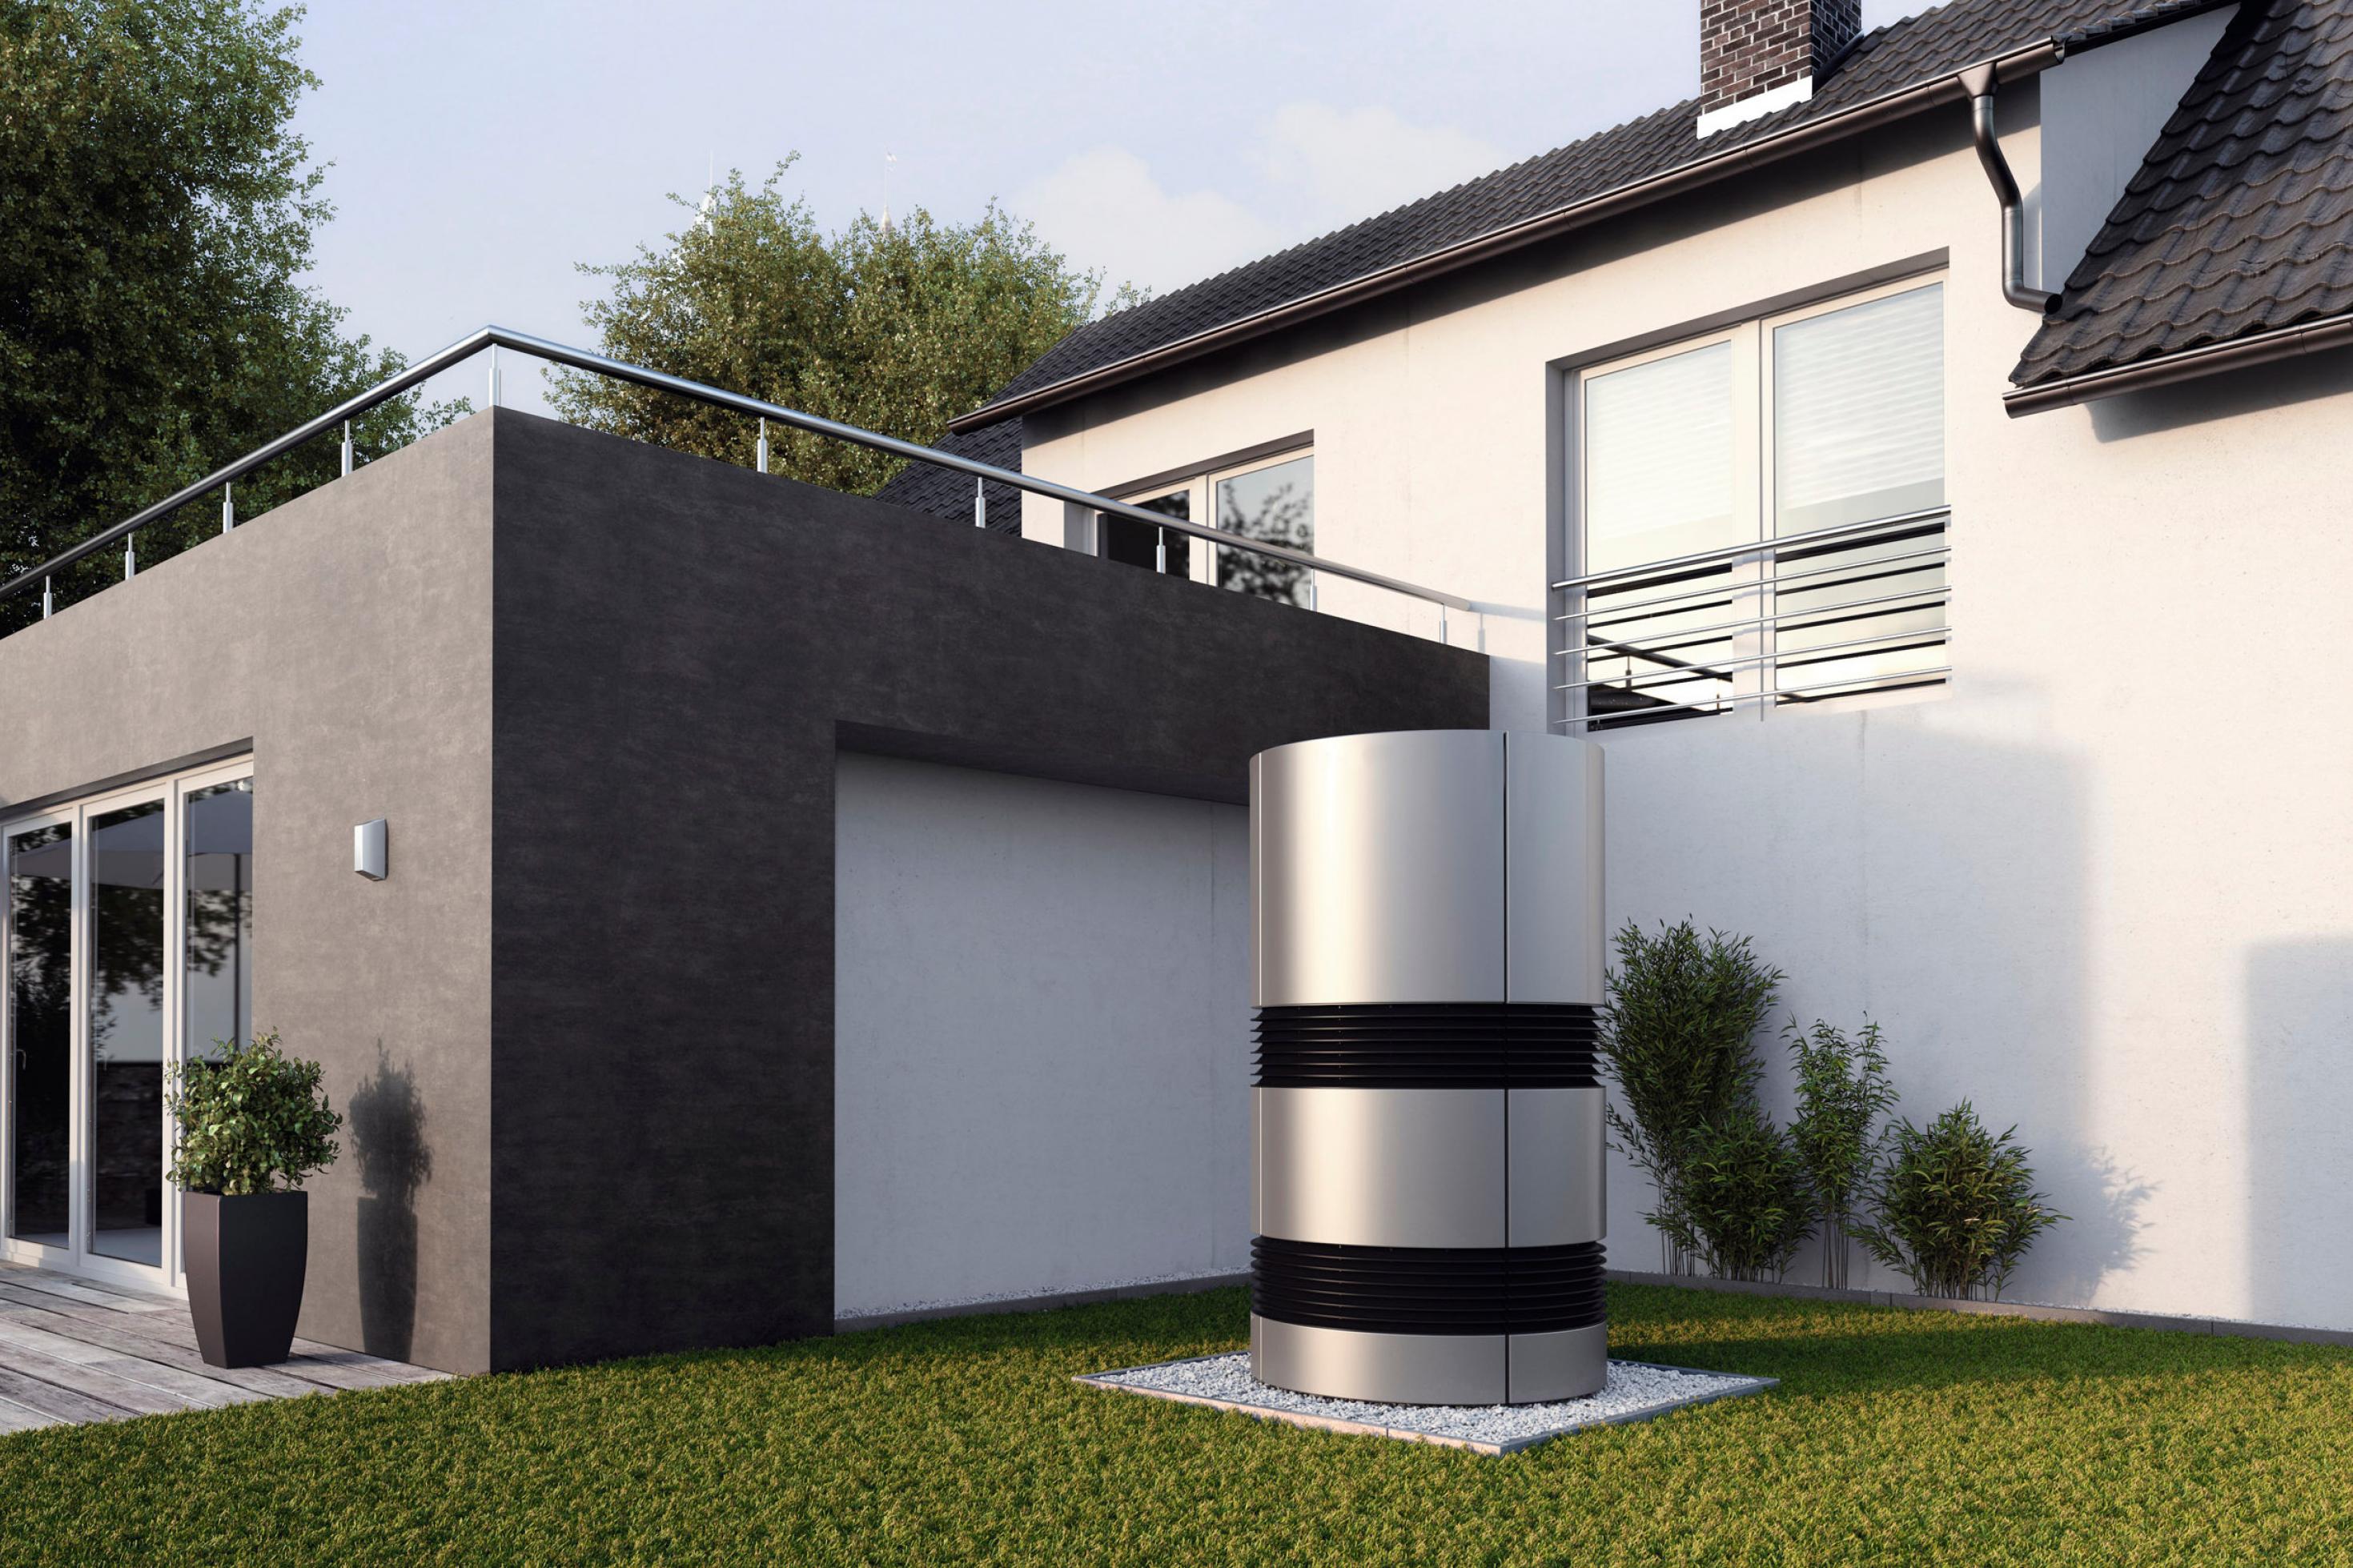 Modernes Einfamilienhaus, Gartenansicht. Im Vordergrund ein rundes, menschenhohes Außengerät einer Klimaanlage.